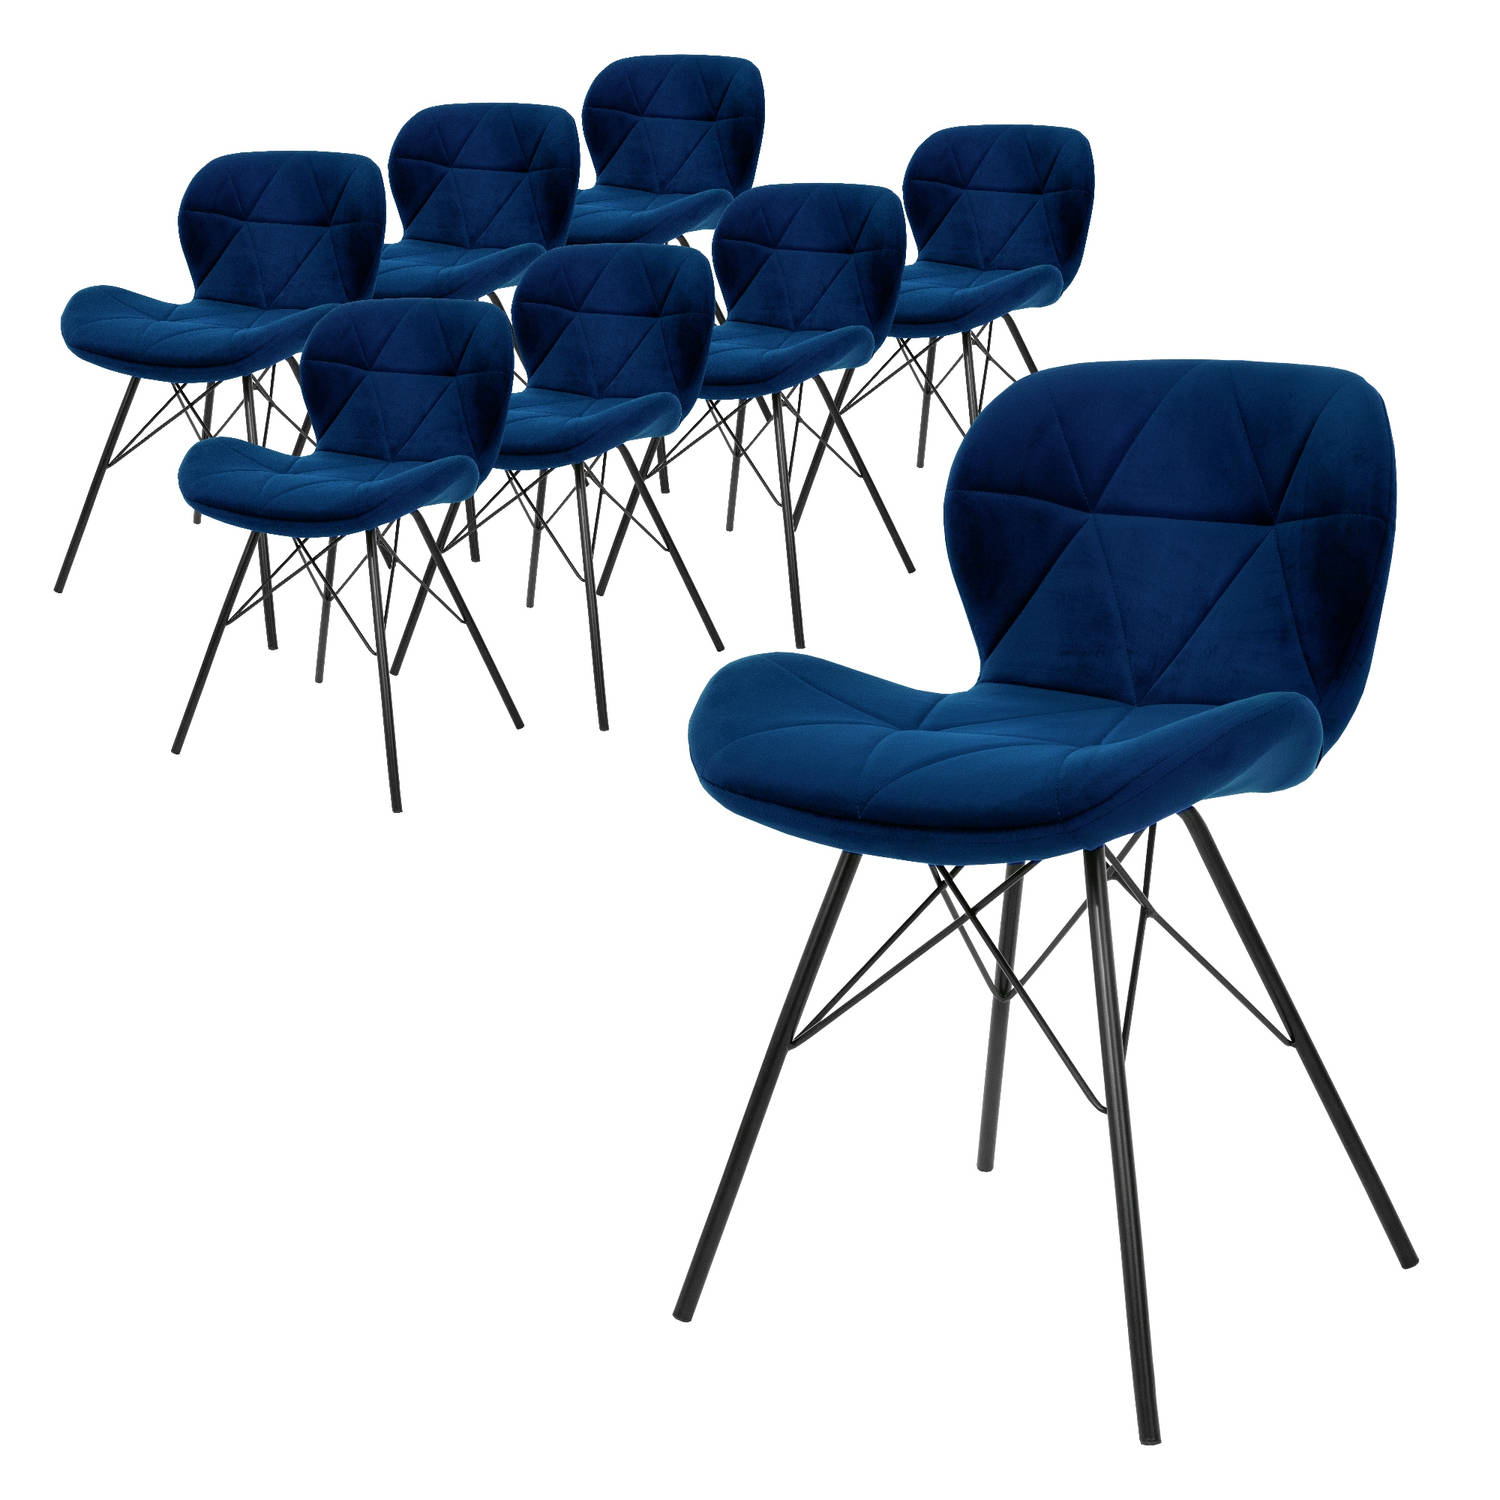 ML-Design Set van 8 eetkamerstoelen met rugleuning, blauw, keukenstoel met fluwelen bekleding, gestoffeerde stoel met metalen poten, ergonomische stoel voor eettafel, woonkamerstoe